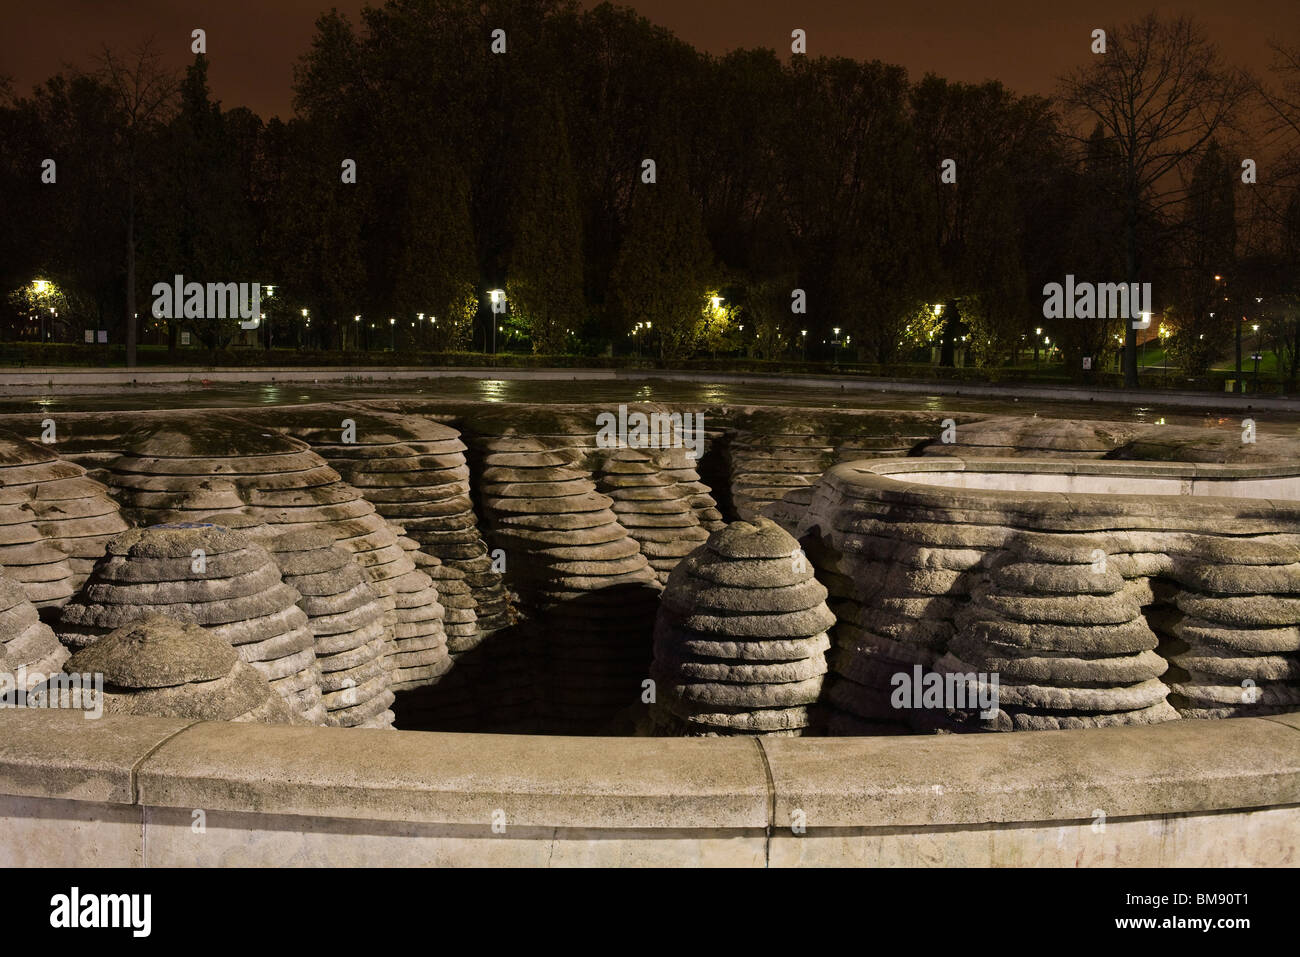 La Fontaine Canyoneaustrate, Parc de Bercy, París, Francia Foto de stock